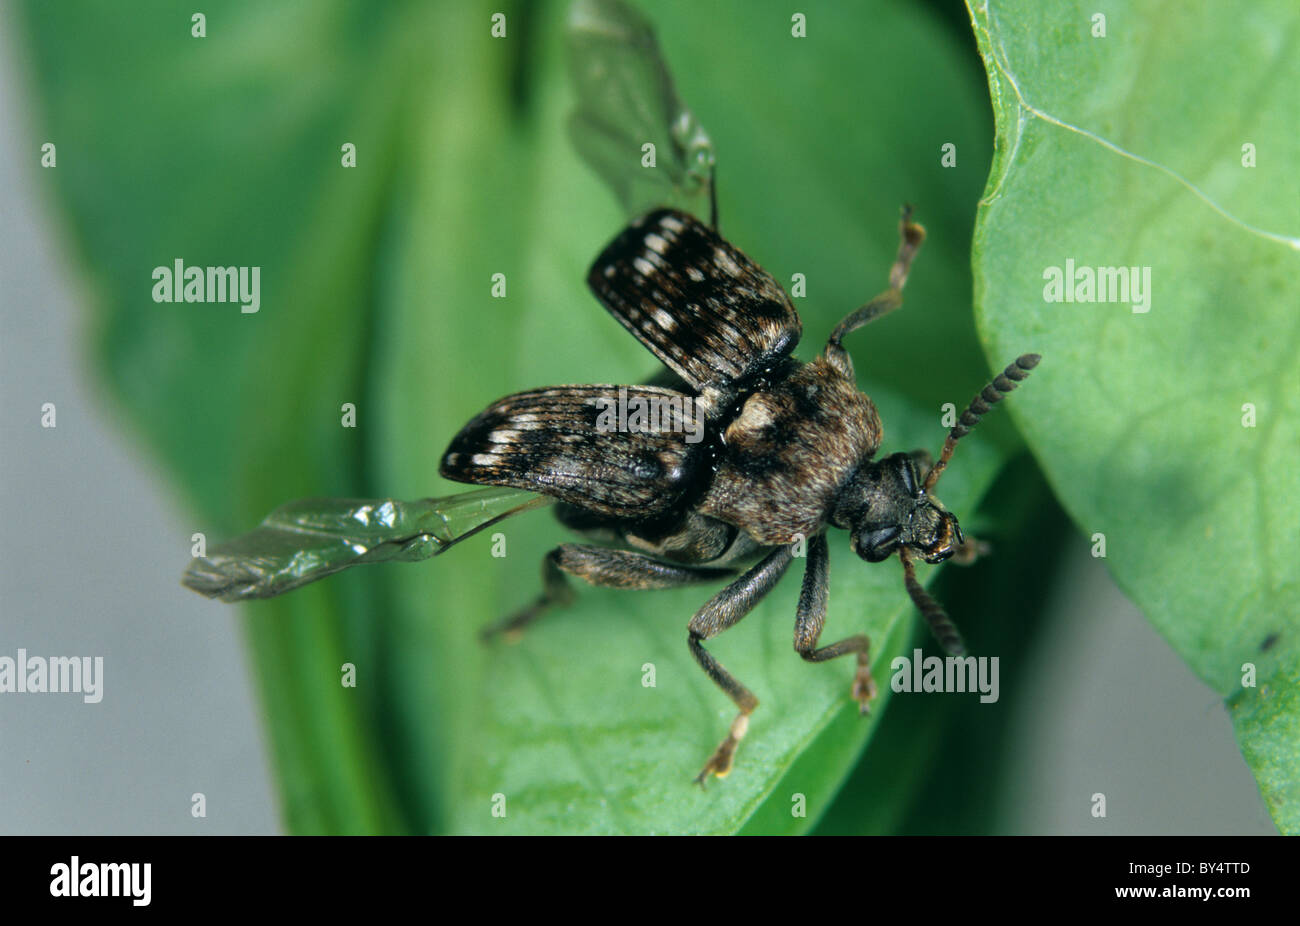 Pea seed beetle (Bruchus pisorum) des profils à propos de voler d'une feuille de pois Banque D'Images